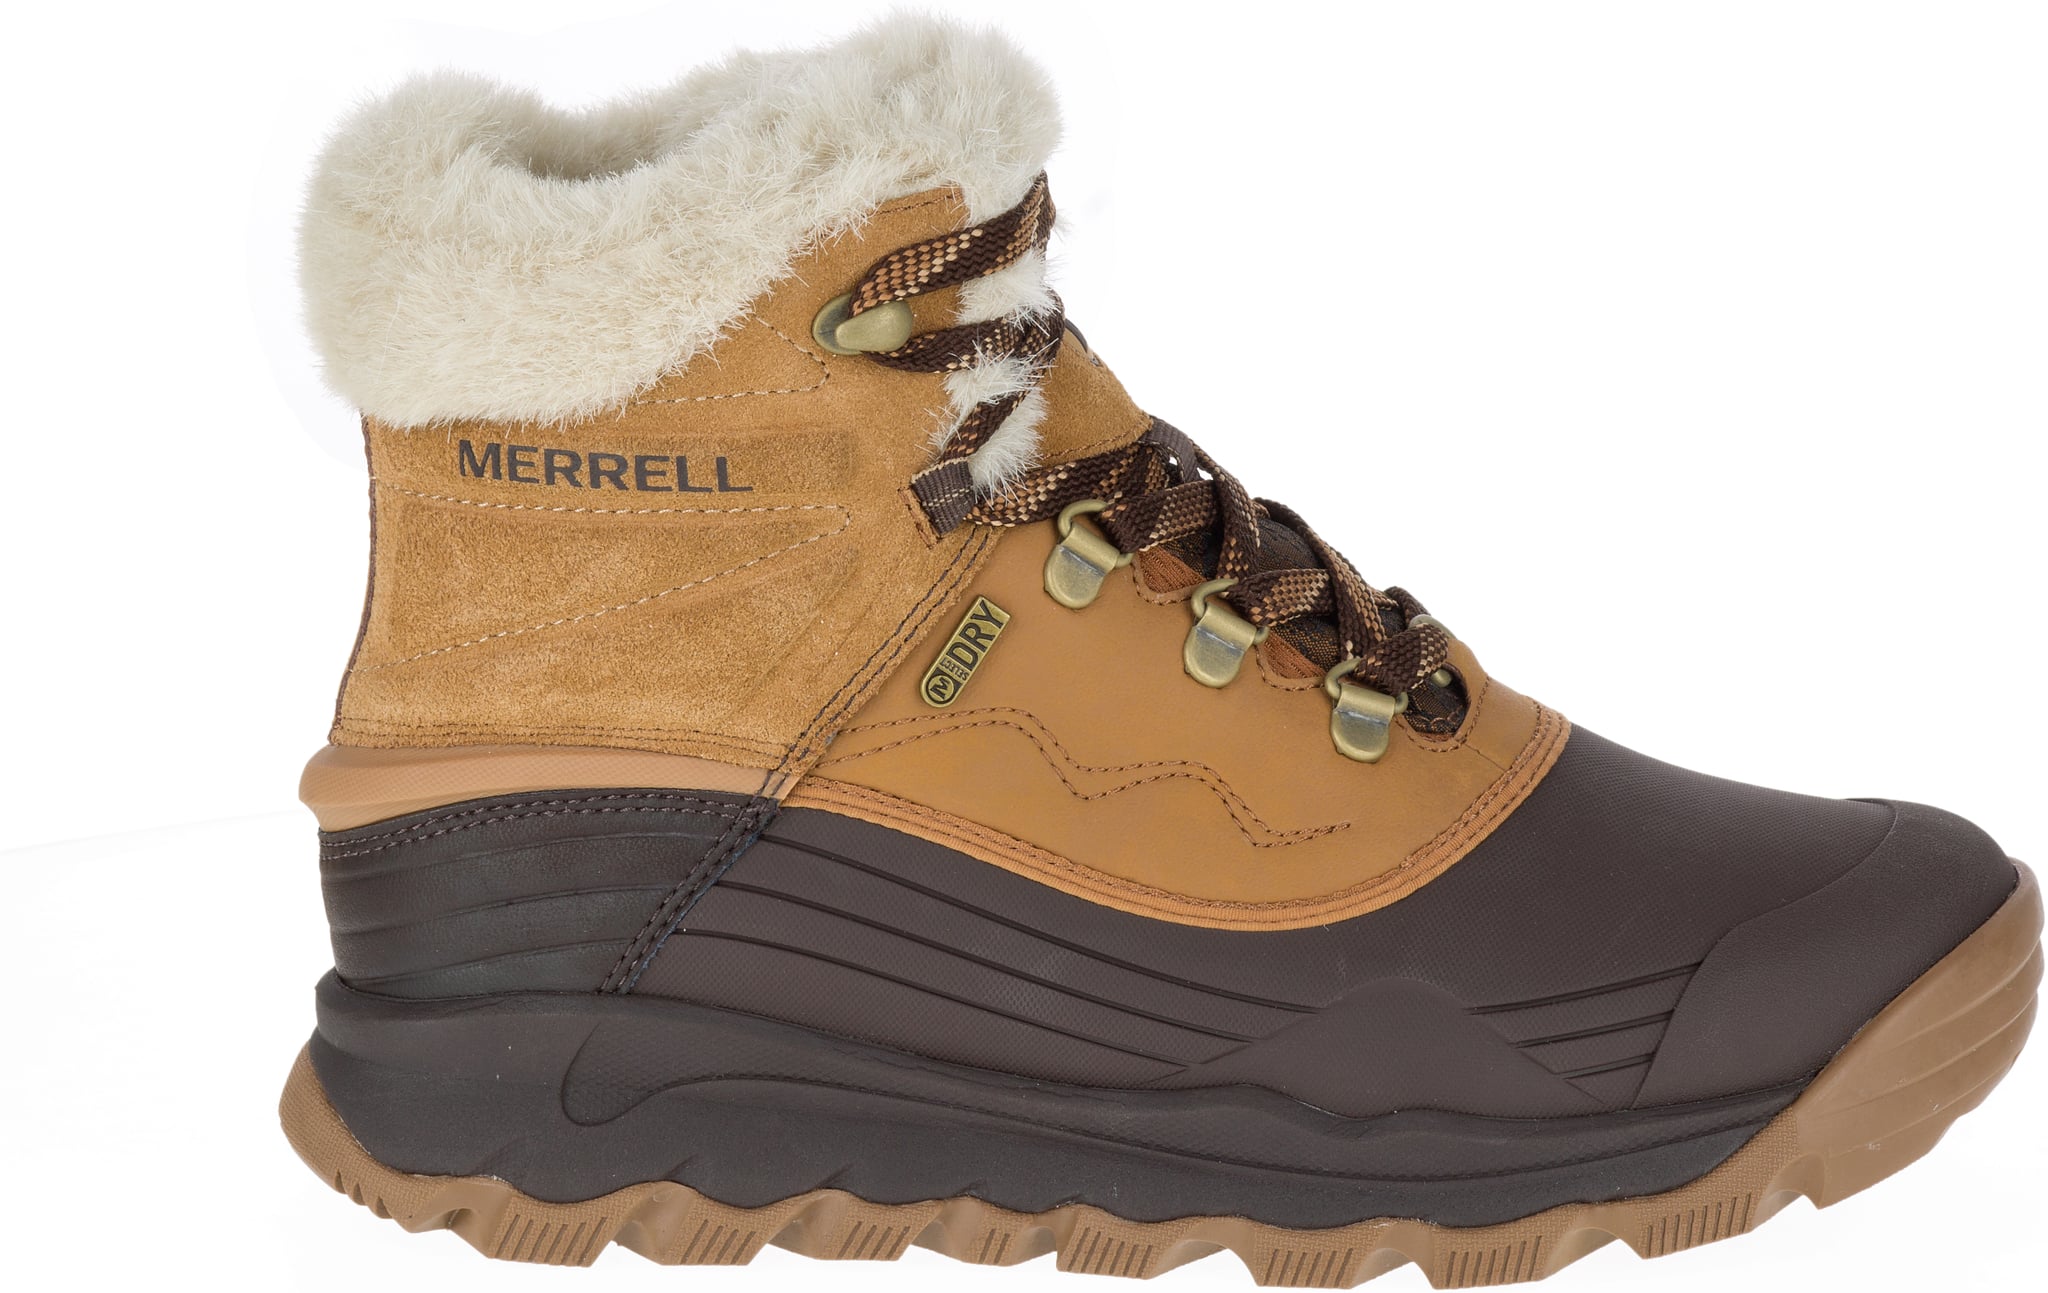 warmest merrell boots